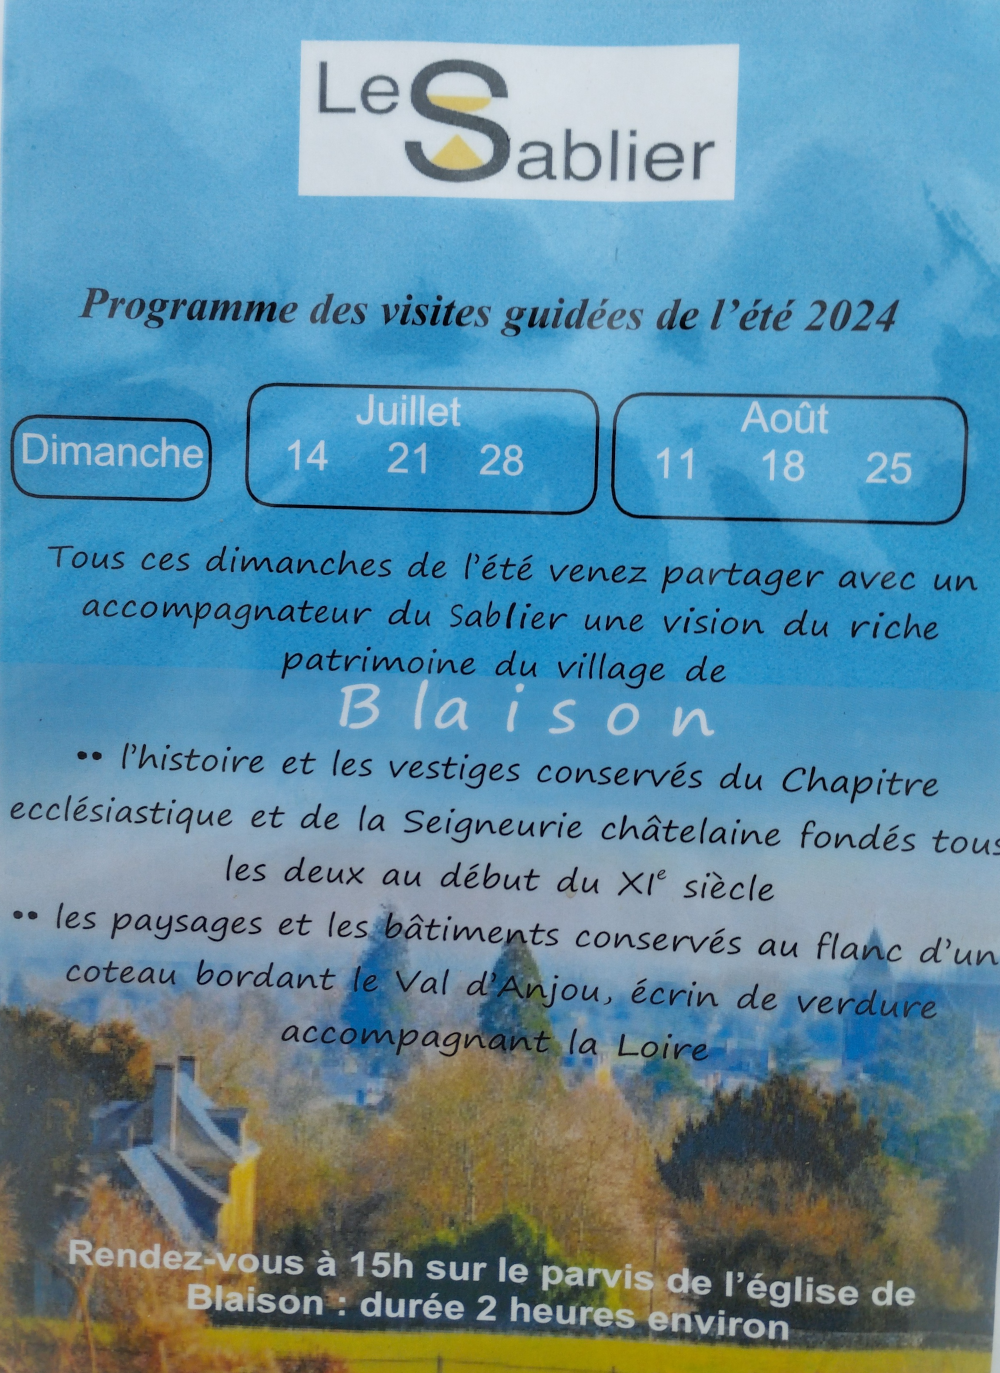 Patrimoine du village de Blaison - Visites guidées de l'été 2024 @ Collégiale Saint Aubin